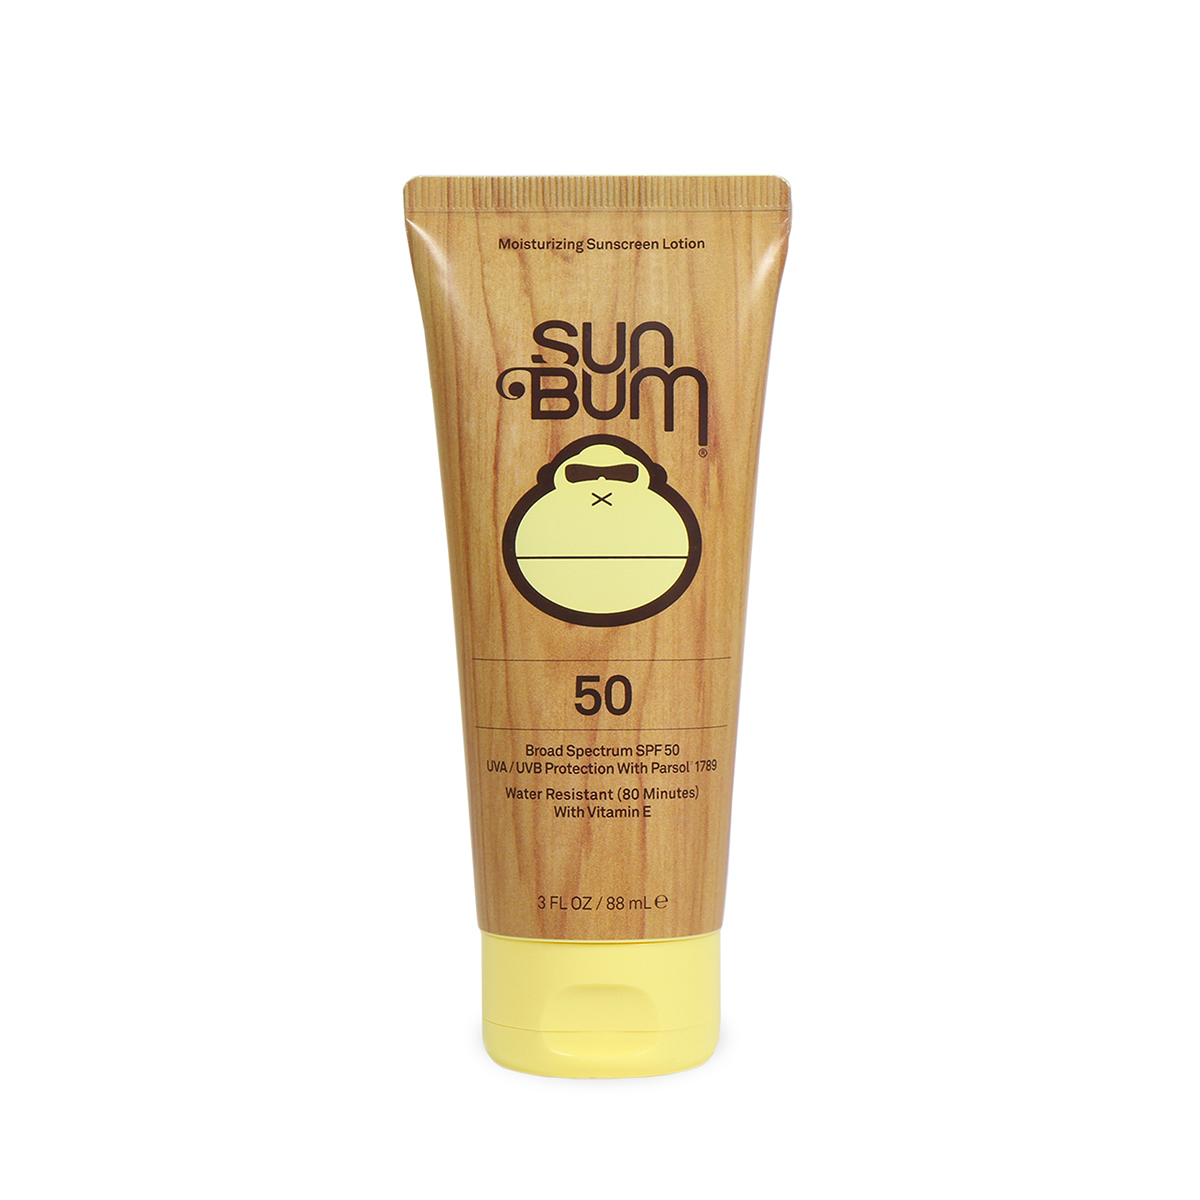 3 oz. Sun Bum SPF50 Sunscreen